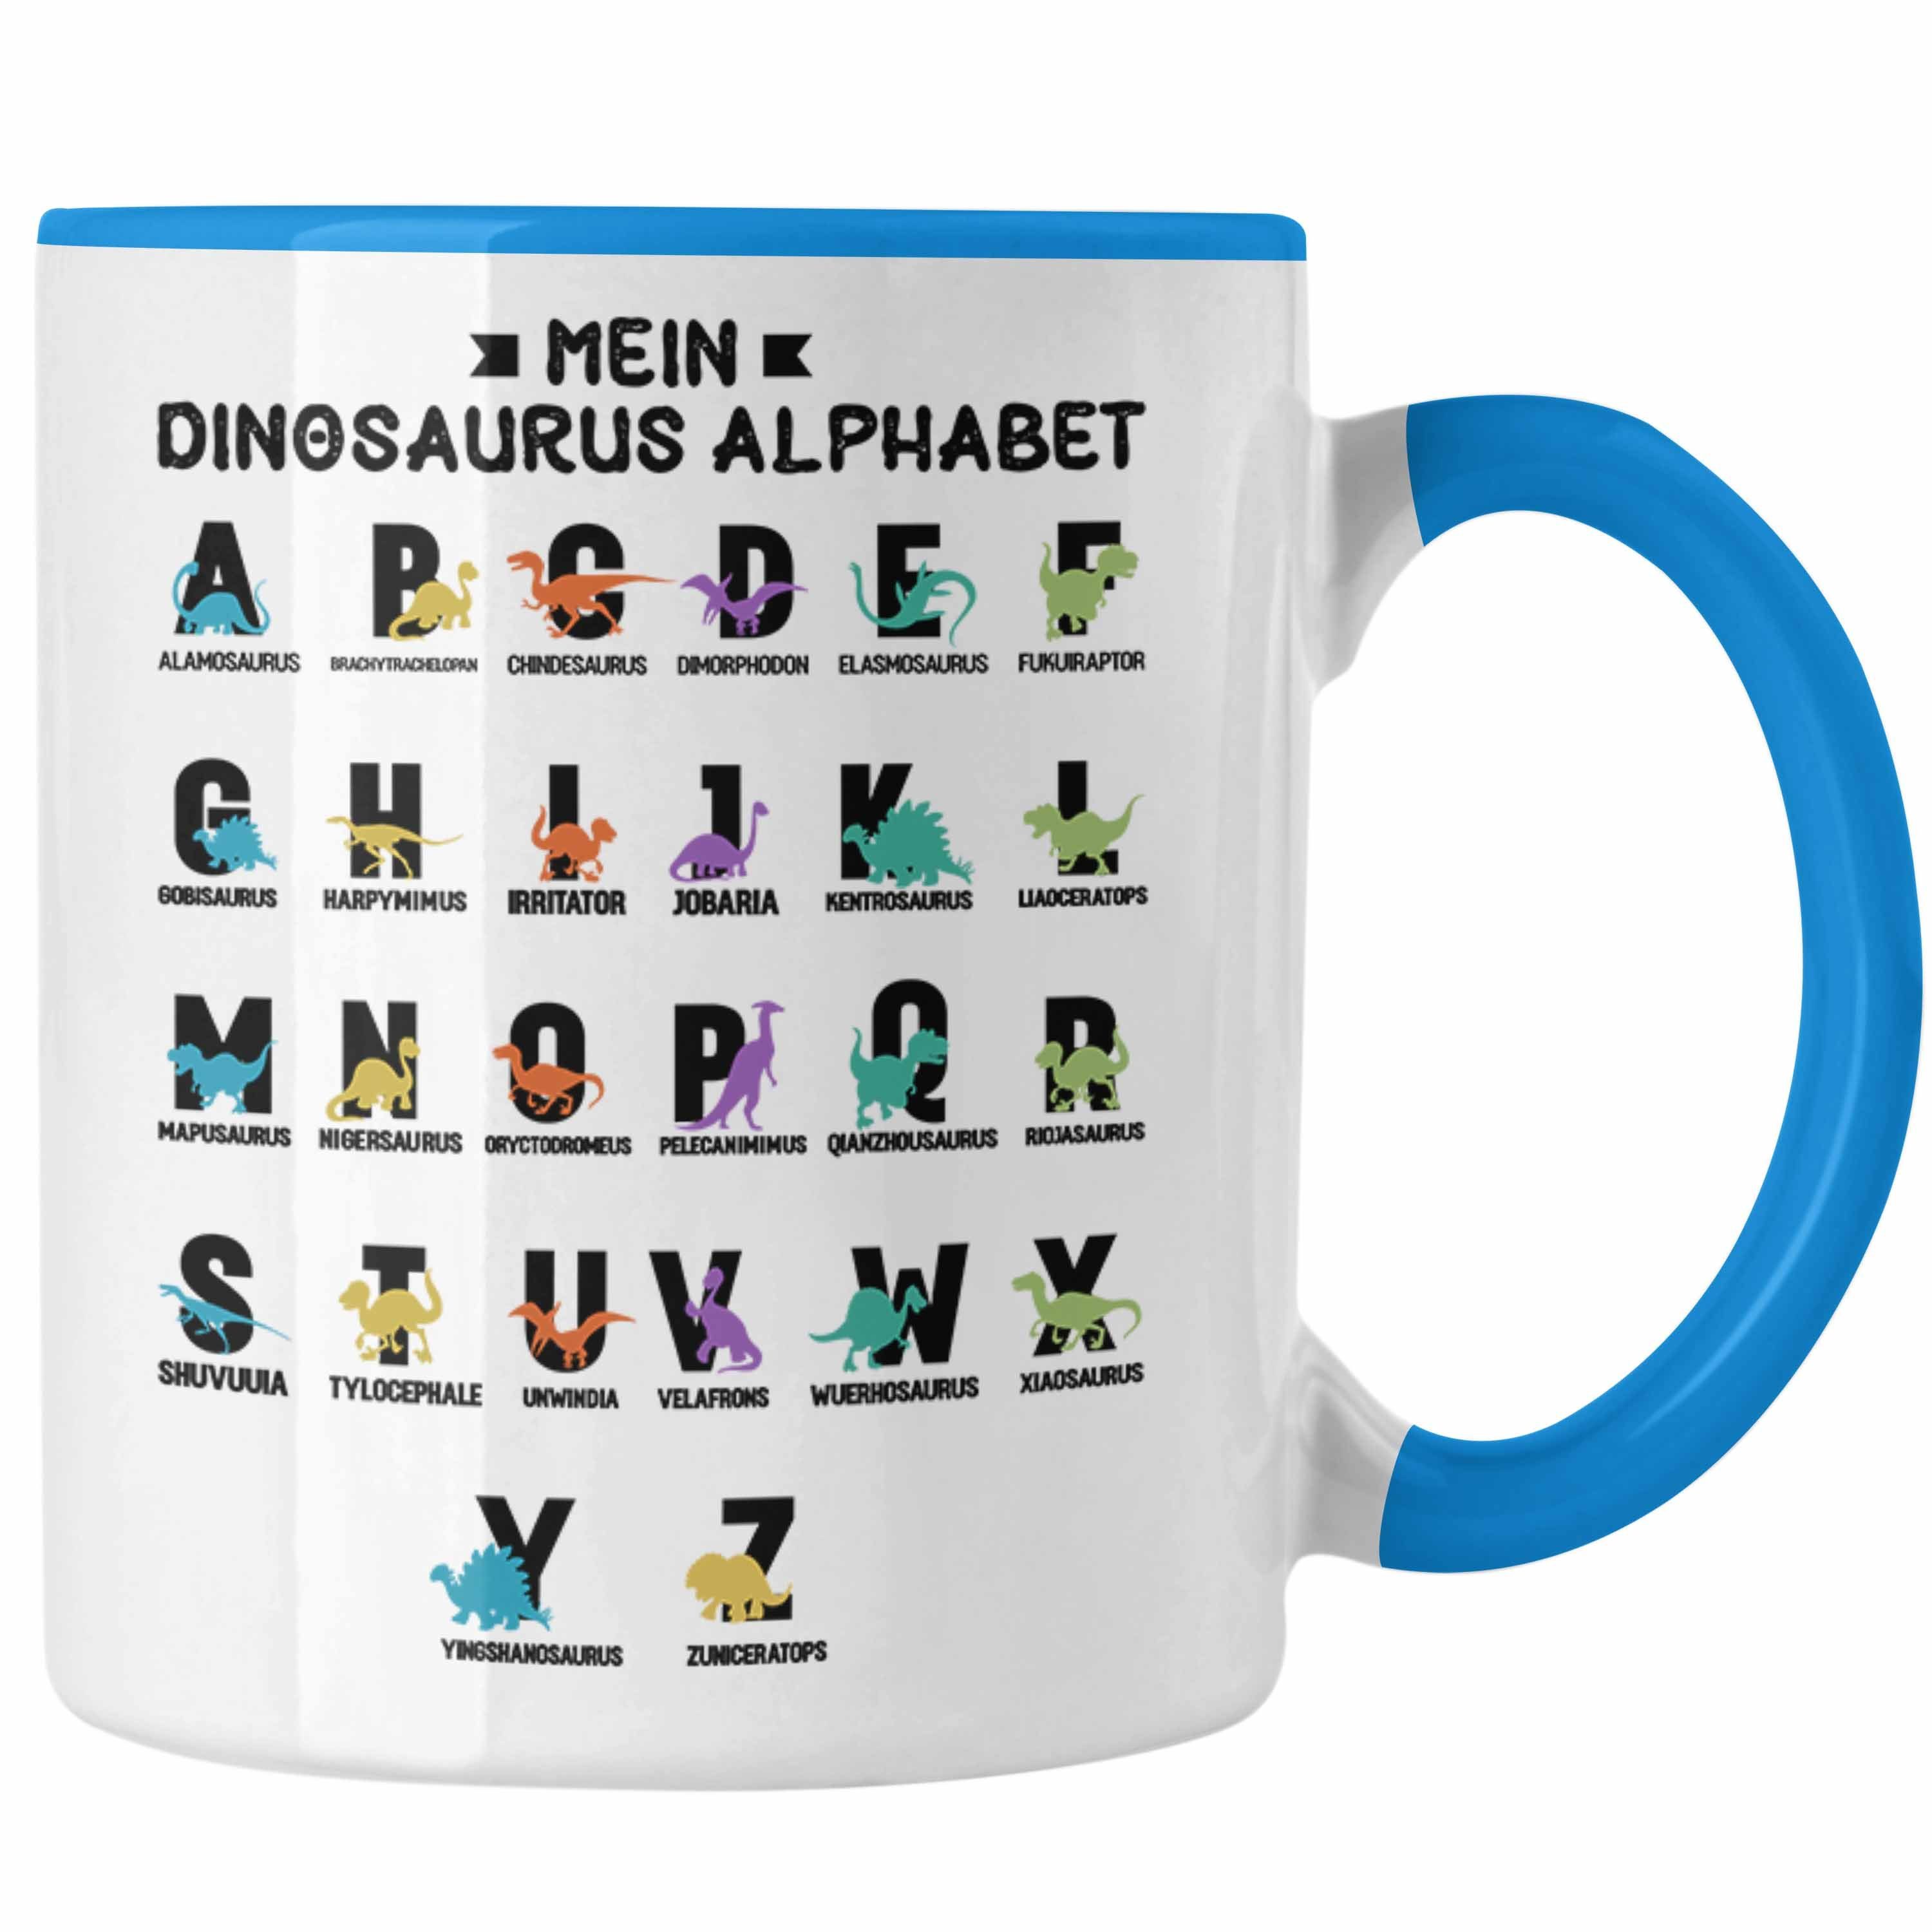 Trendation Arten Kinder - Dinosaurier Klasse Mein Dino T-Rex Geschenk Tasse Grundschule Blau ABC Alphabet 1. Trendation A-Z